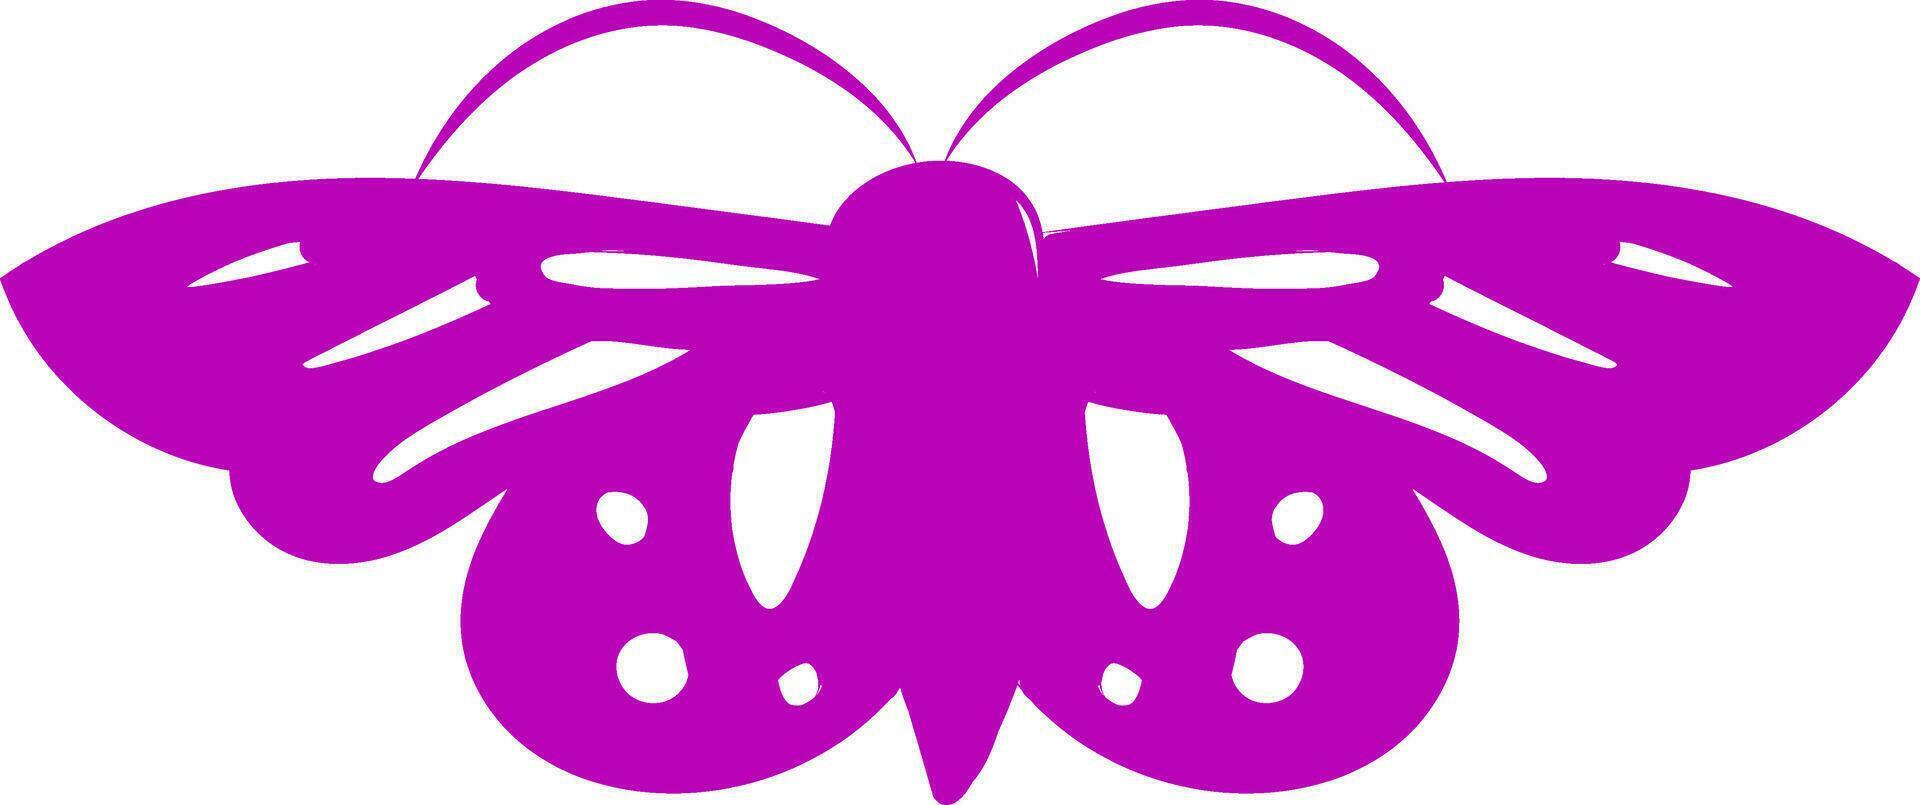 imagen de carmesí mariposa - mariposa, vector o color ilustración.